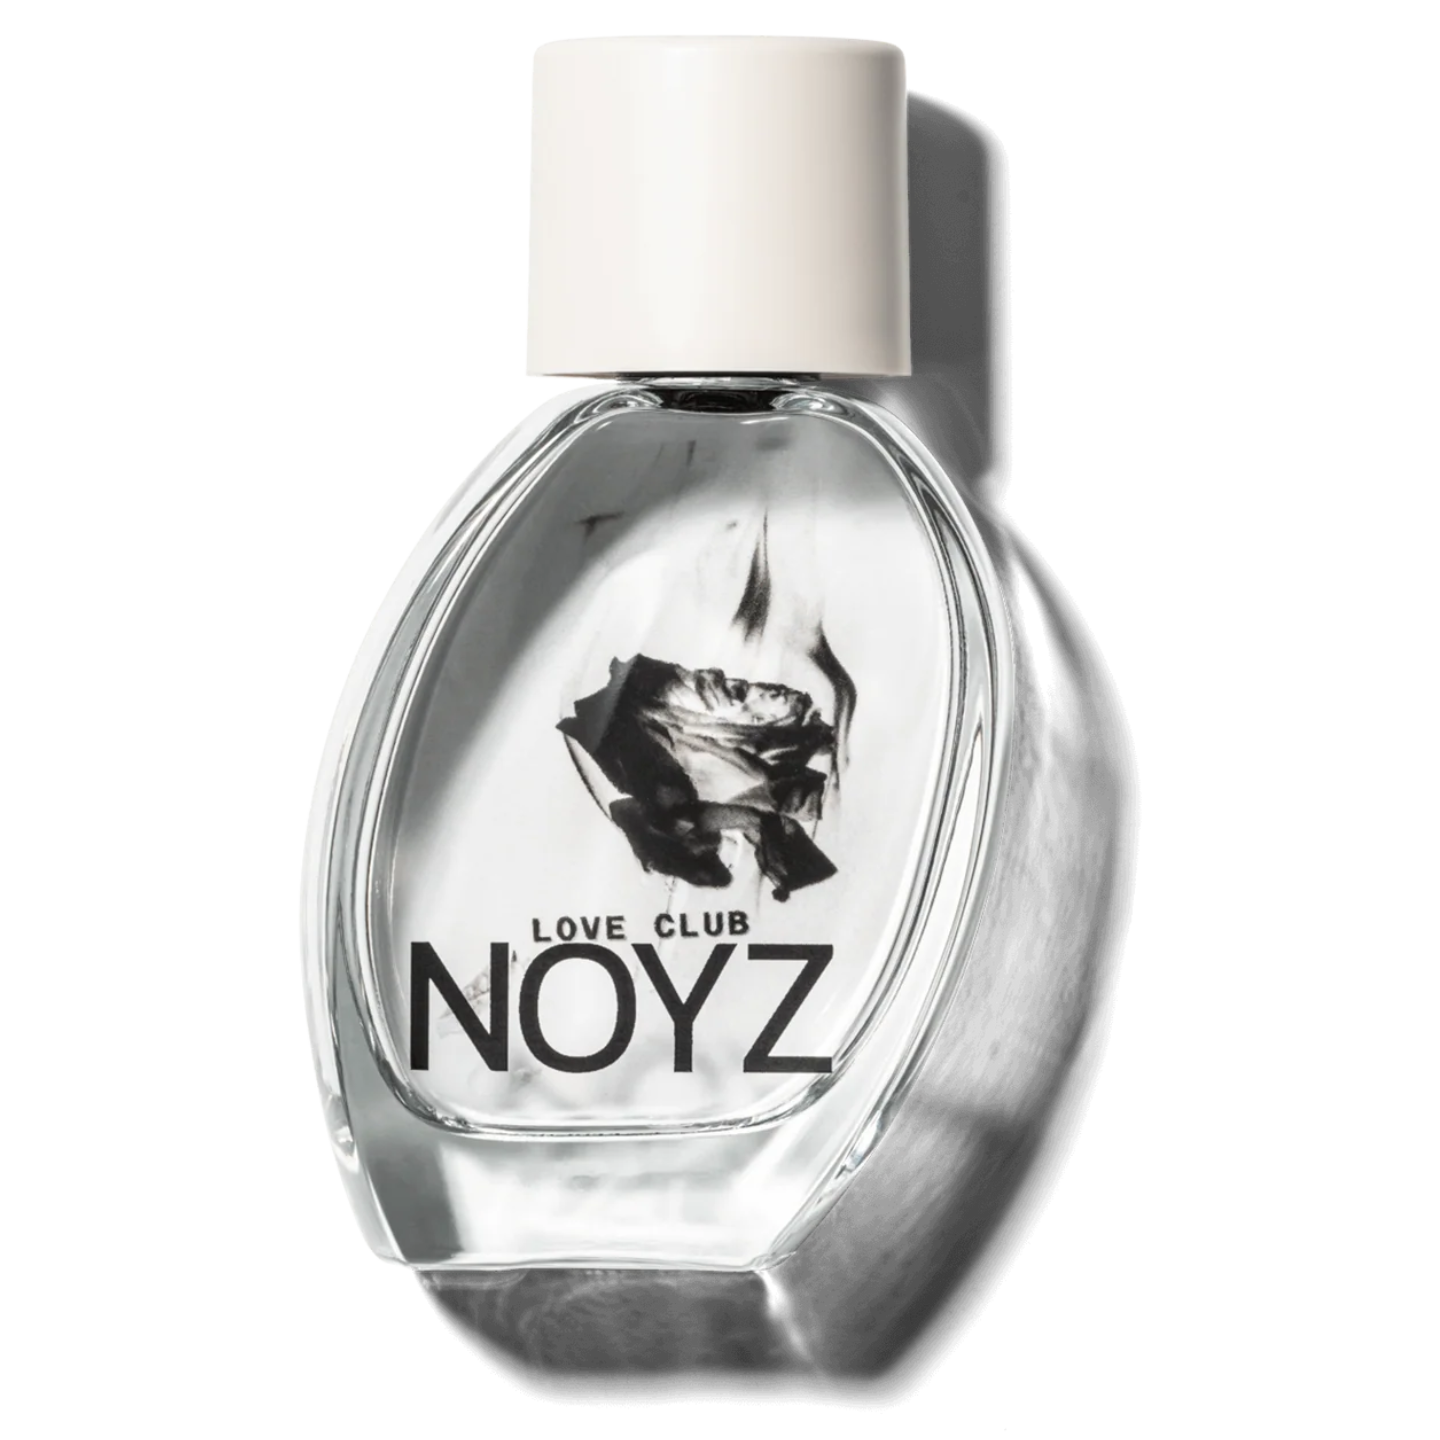 Noyz Loveclub fragrance